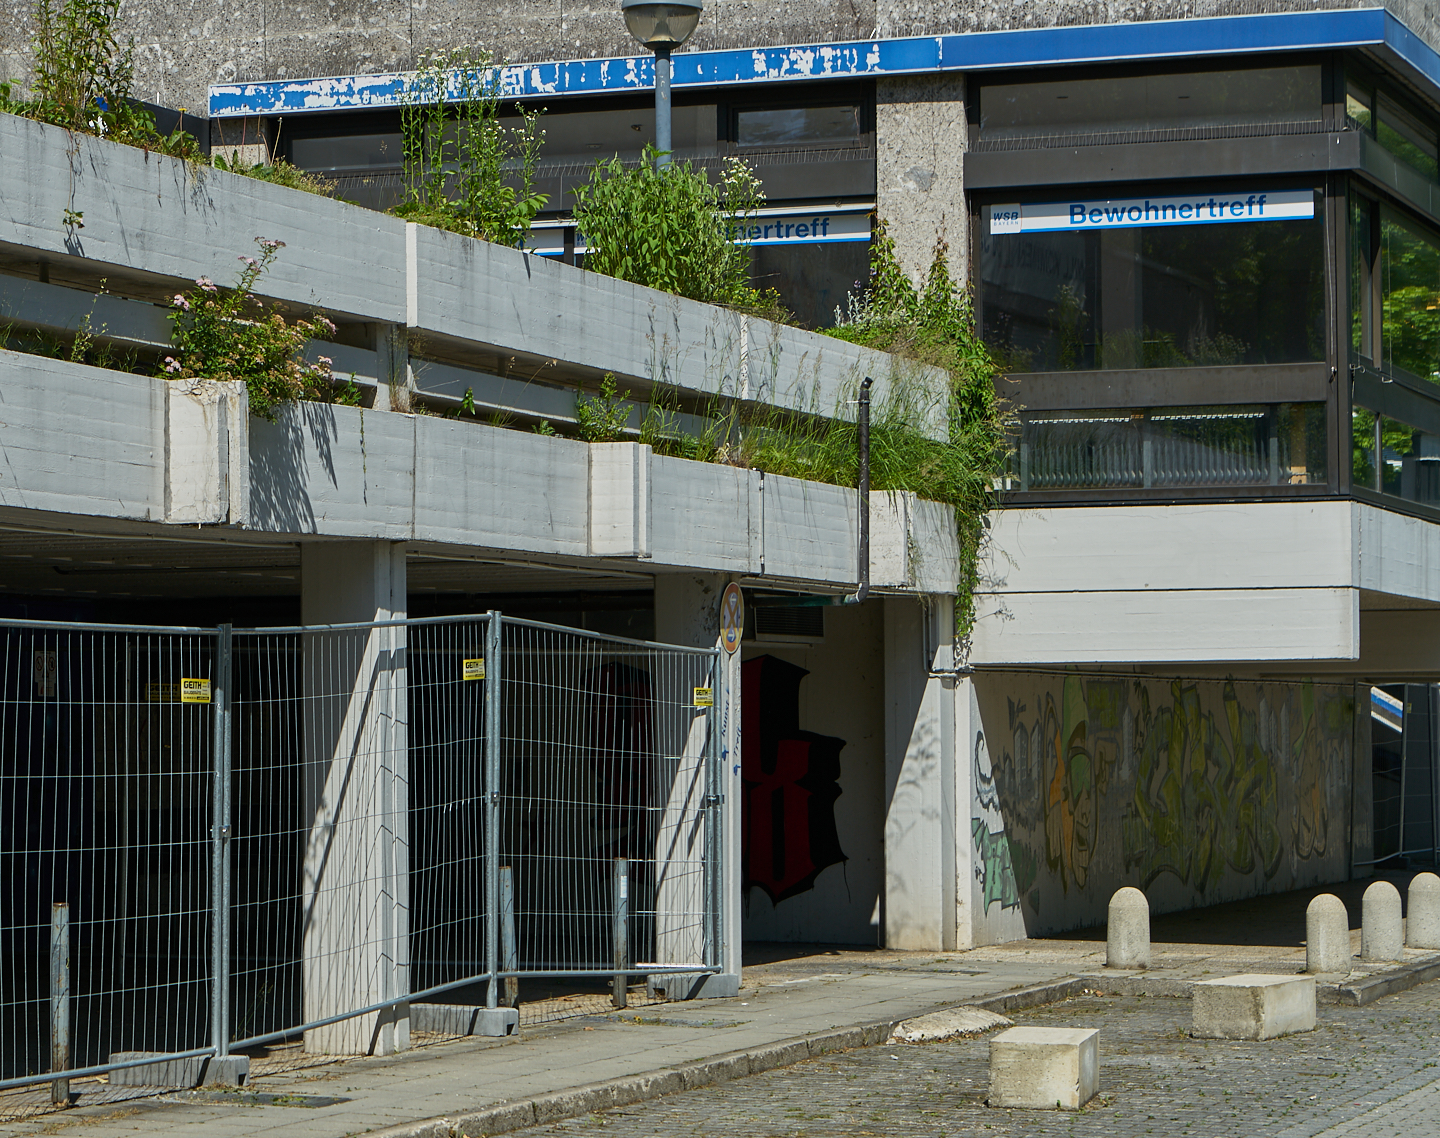 19.06.2019 - Abrissbaustelle Quiddezentrum in Neuperlach